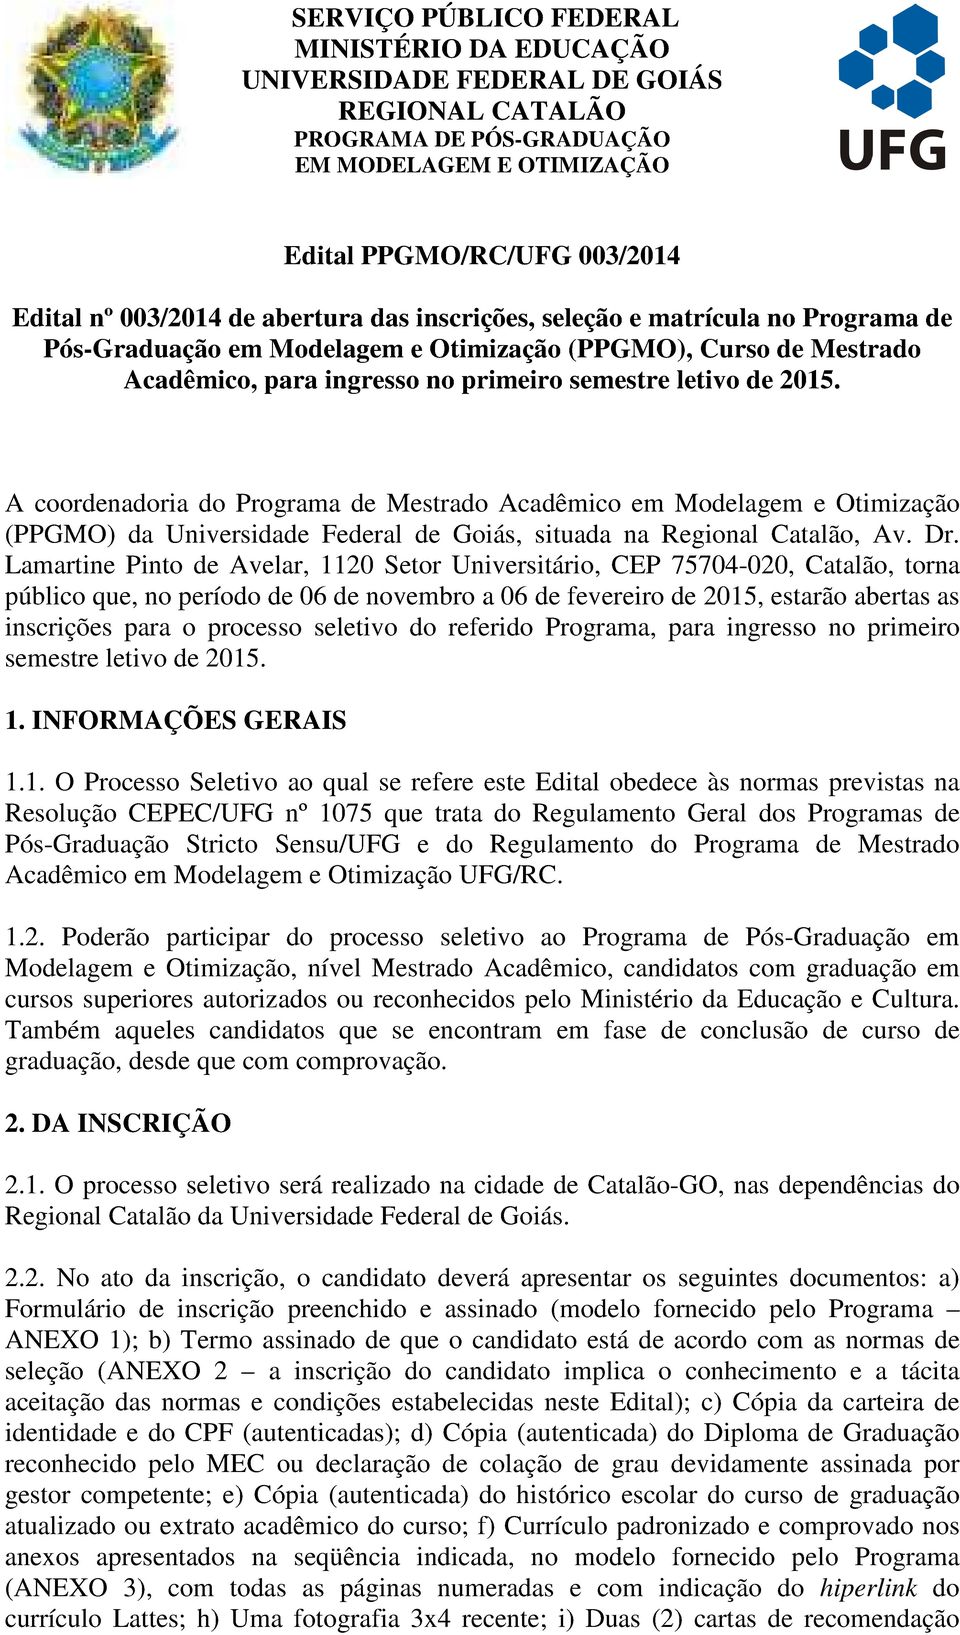 Lamartine Pinto de Avelar, 1120 Setor Universitário, CEP 75704-020, Catalão, torna público que, no período de 06 de novembro a 06 de fevereiro de 2015, estarão abertas as inscrições para o processo